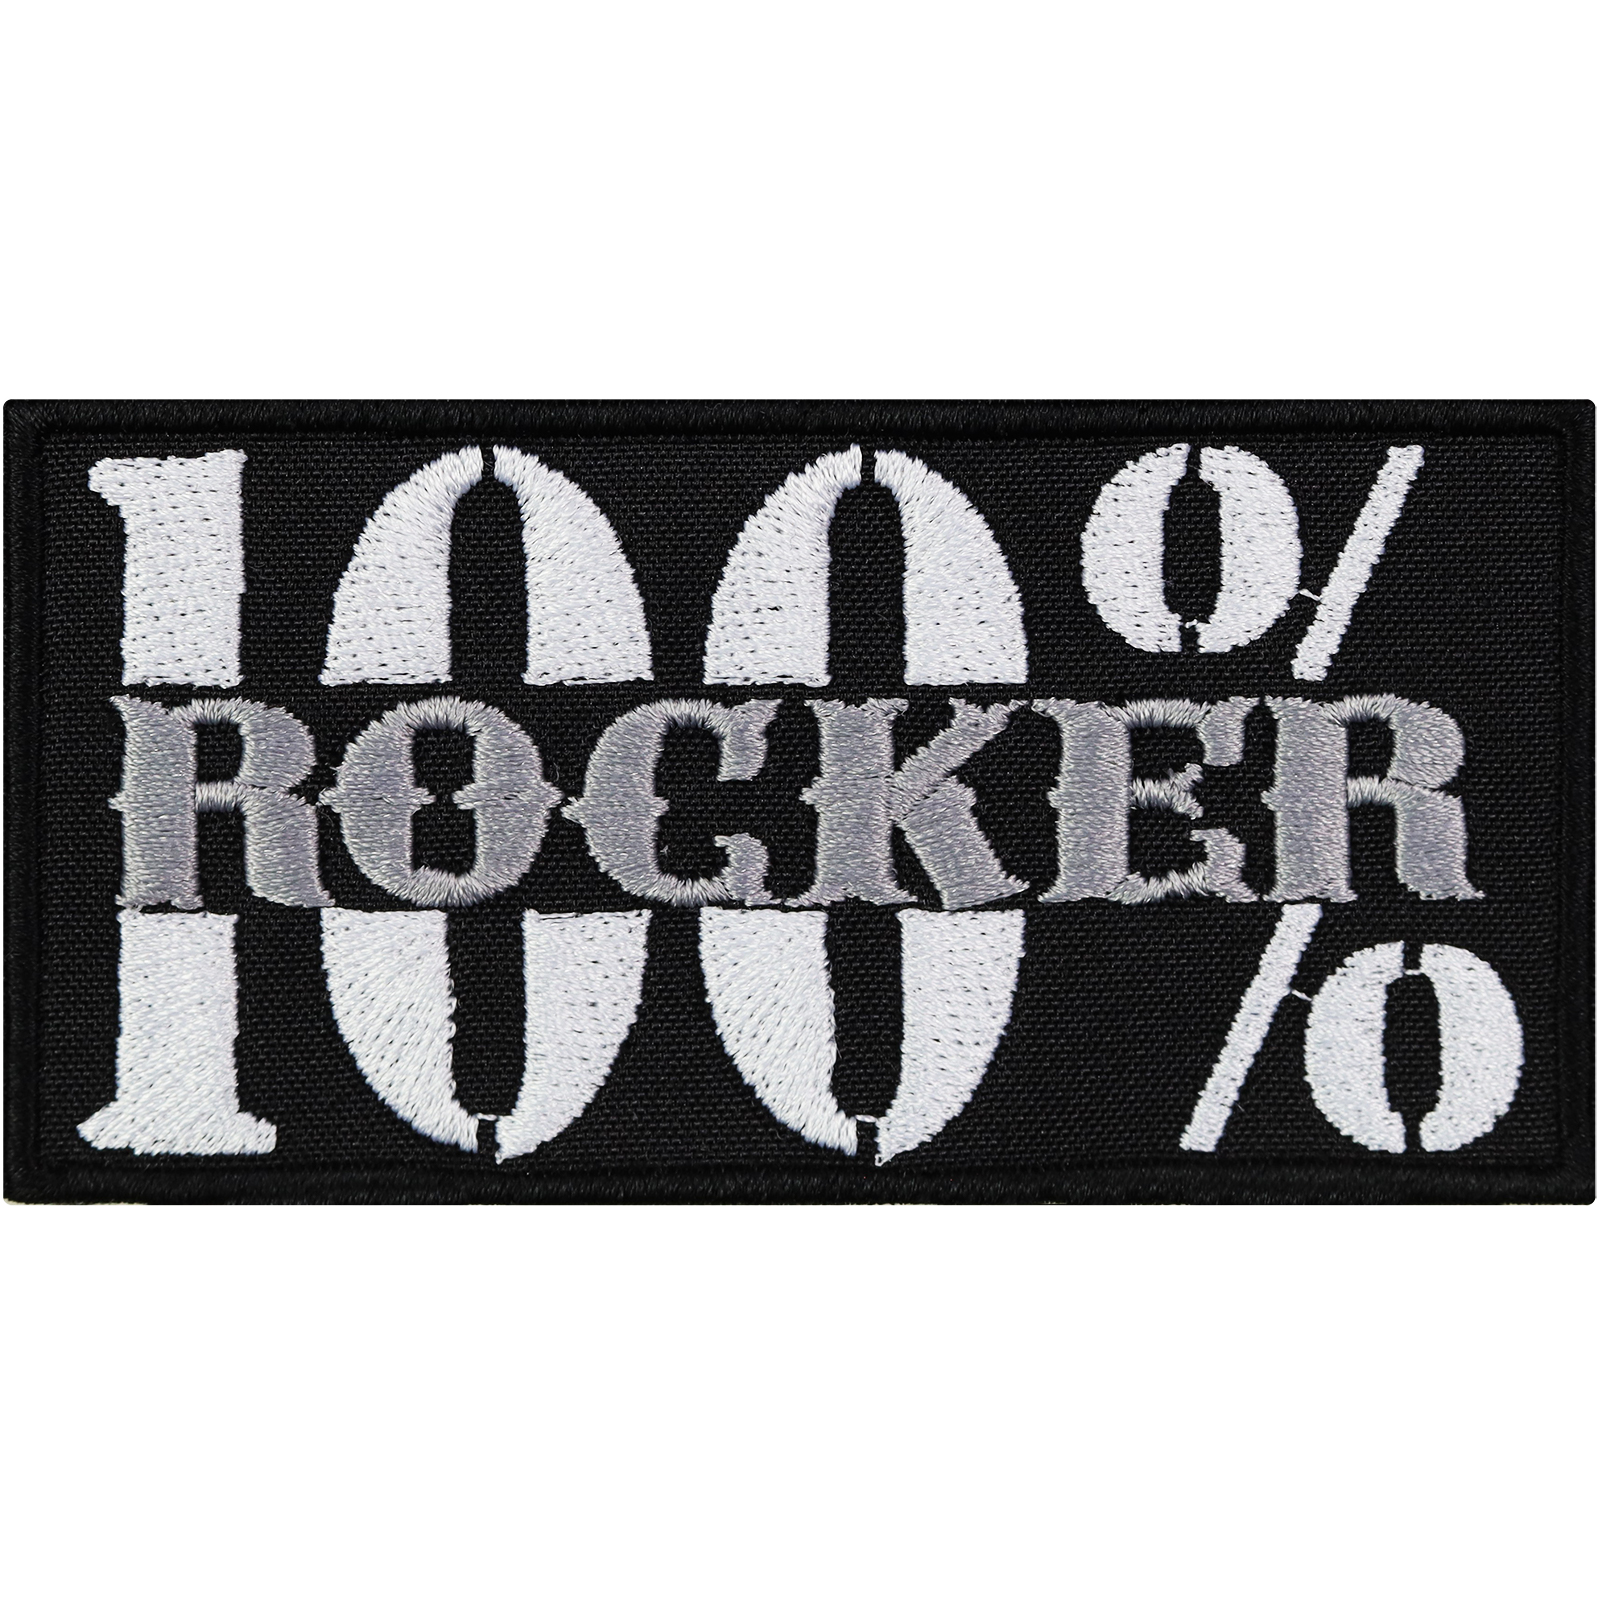 100% Rocker - Patch